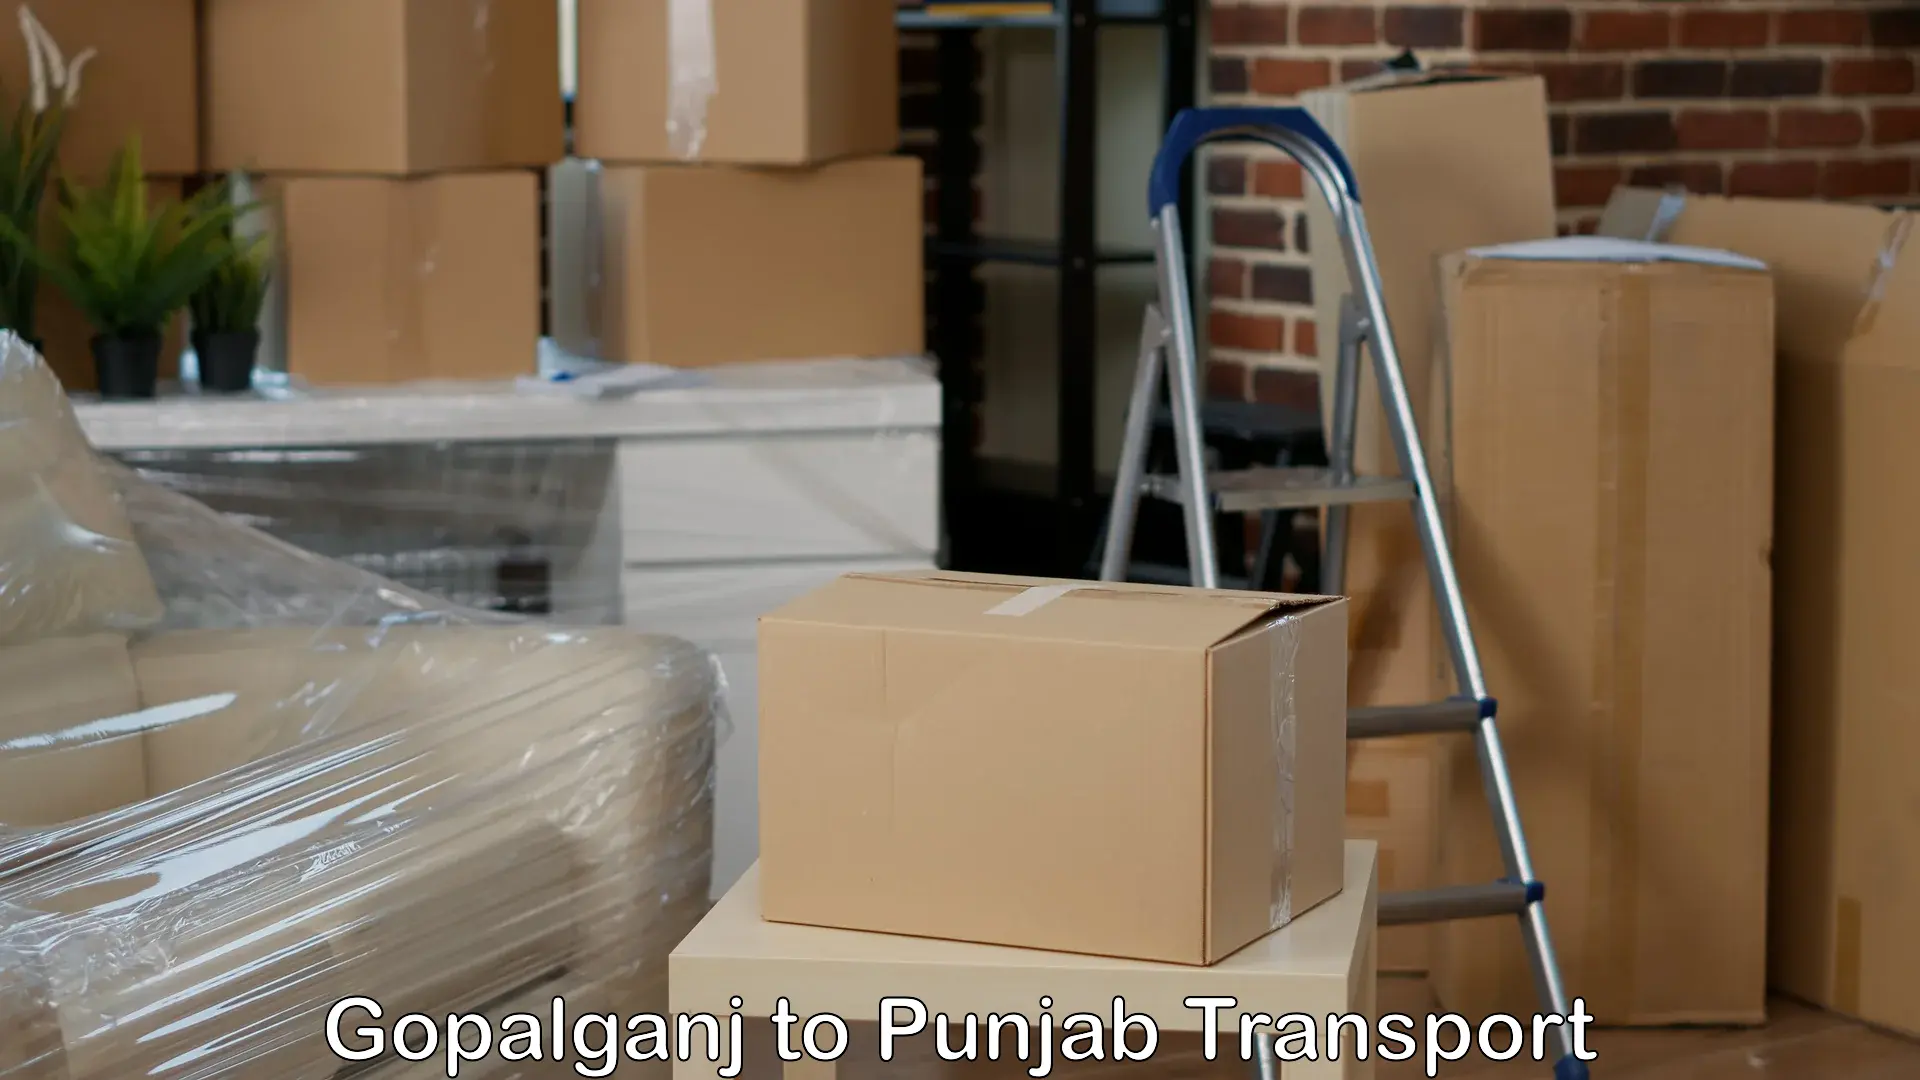 Shipping partner Gopalganj to Raikot